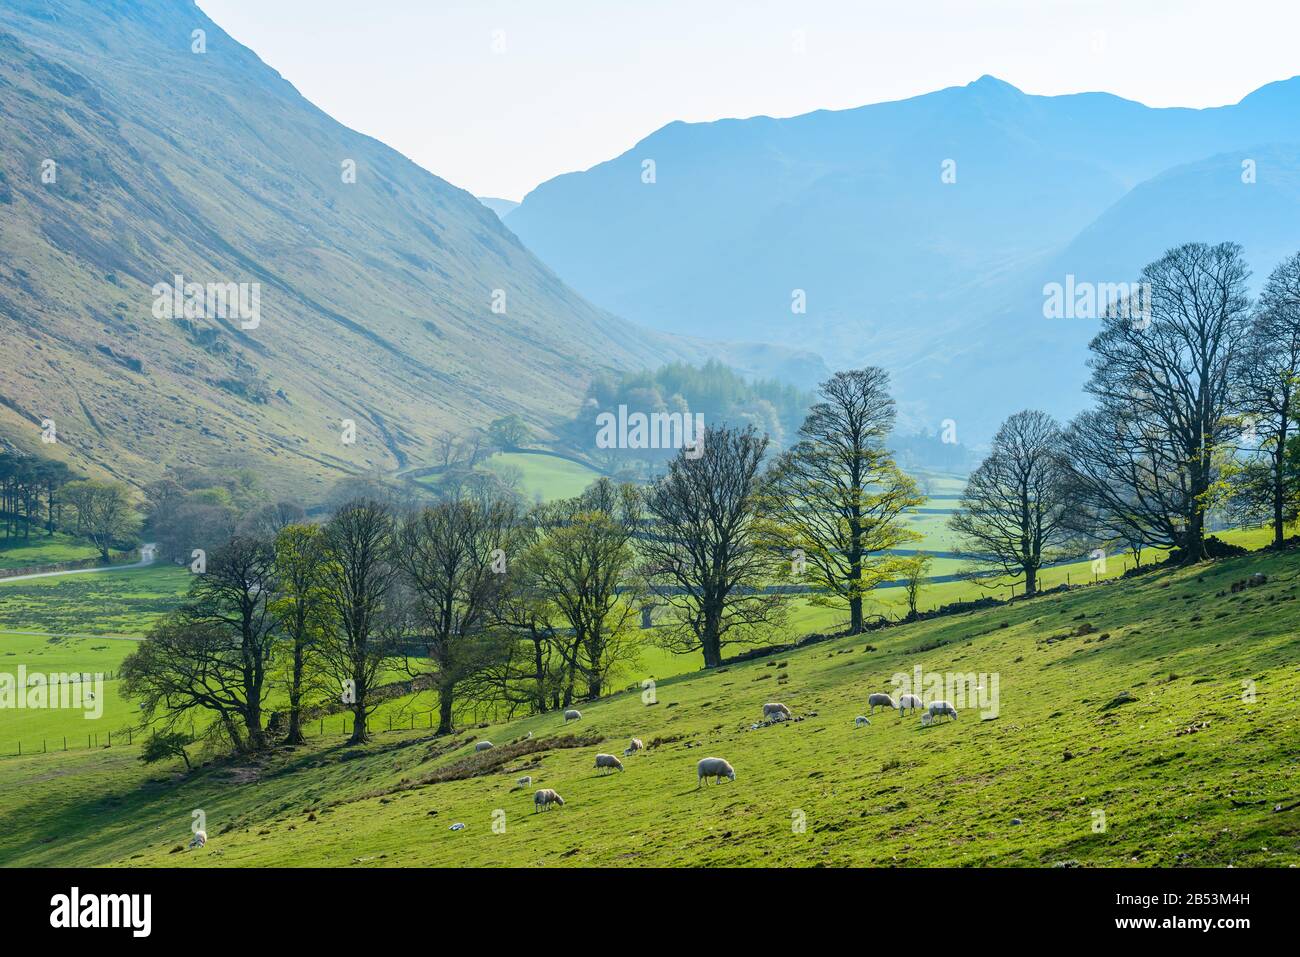 Les moutons paissent sur de l'herbe verte vive pendant la saison de lambing sur les pentes inférieures de Birkhouse Moor près de Glenridding, Lake District, Cumbria, Royaume-Uni, en avril. Banque D'Images